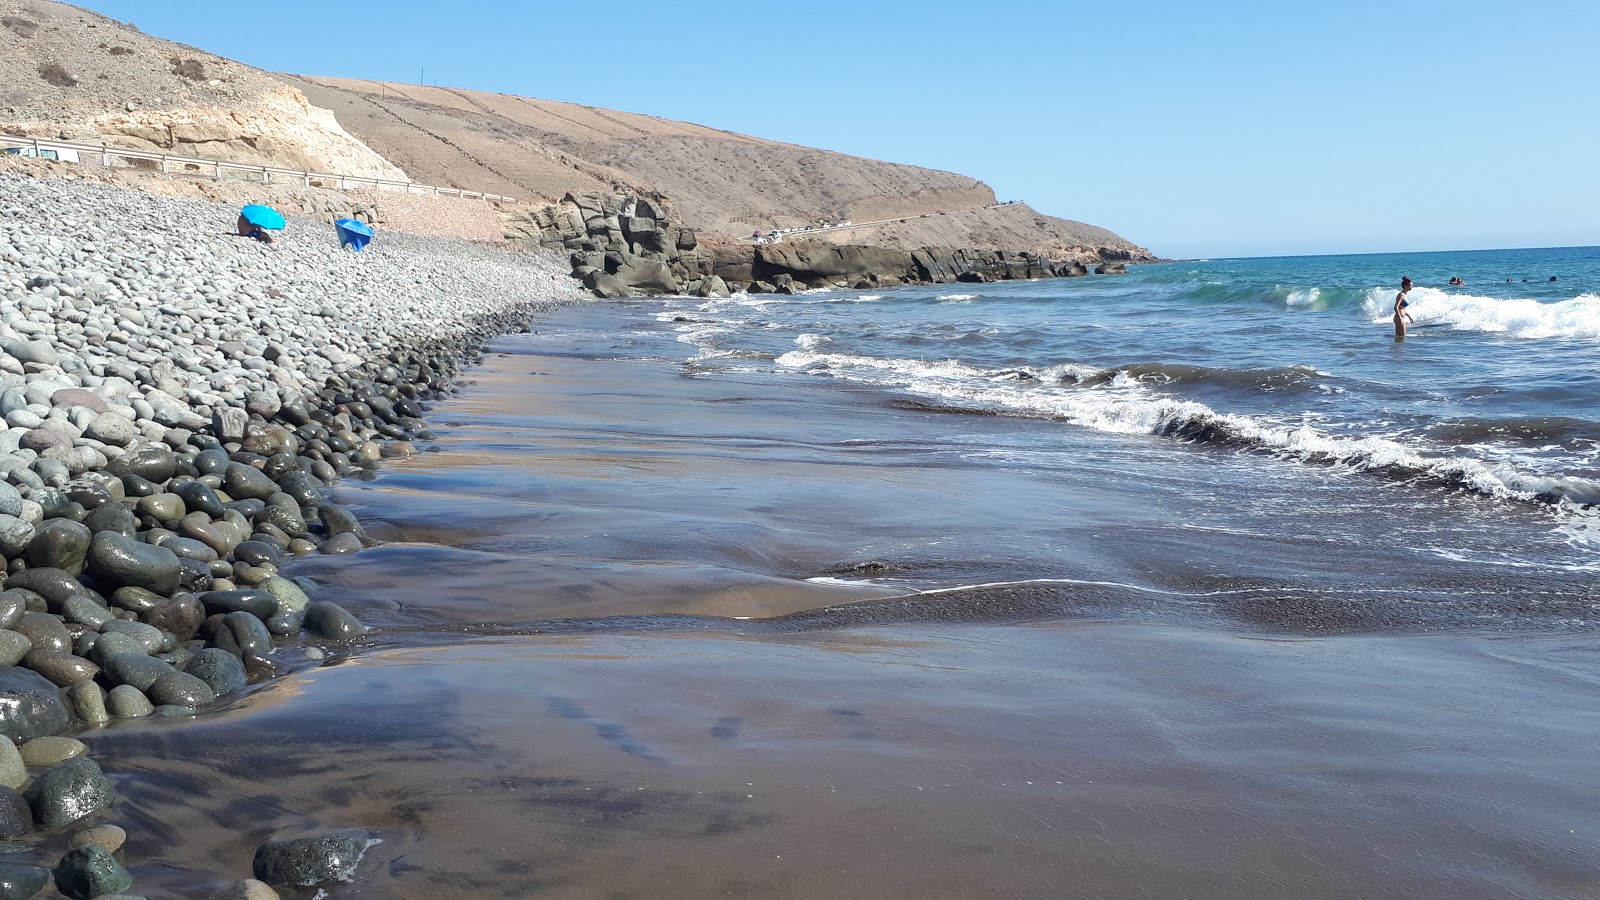 Playa de las Carpinteras'in fotoğrafı mavi saf su yüzey ile